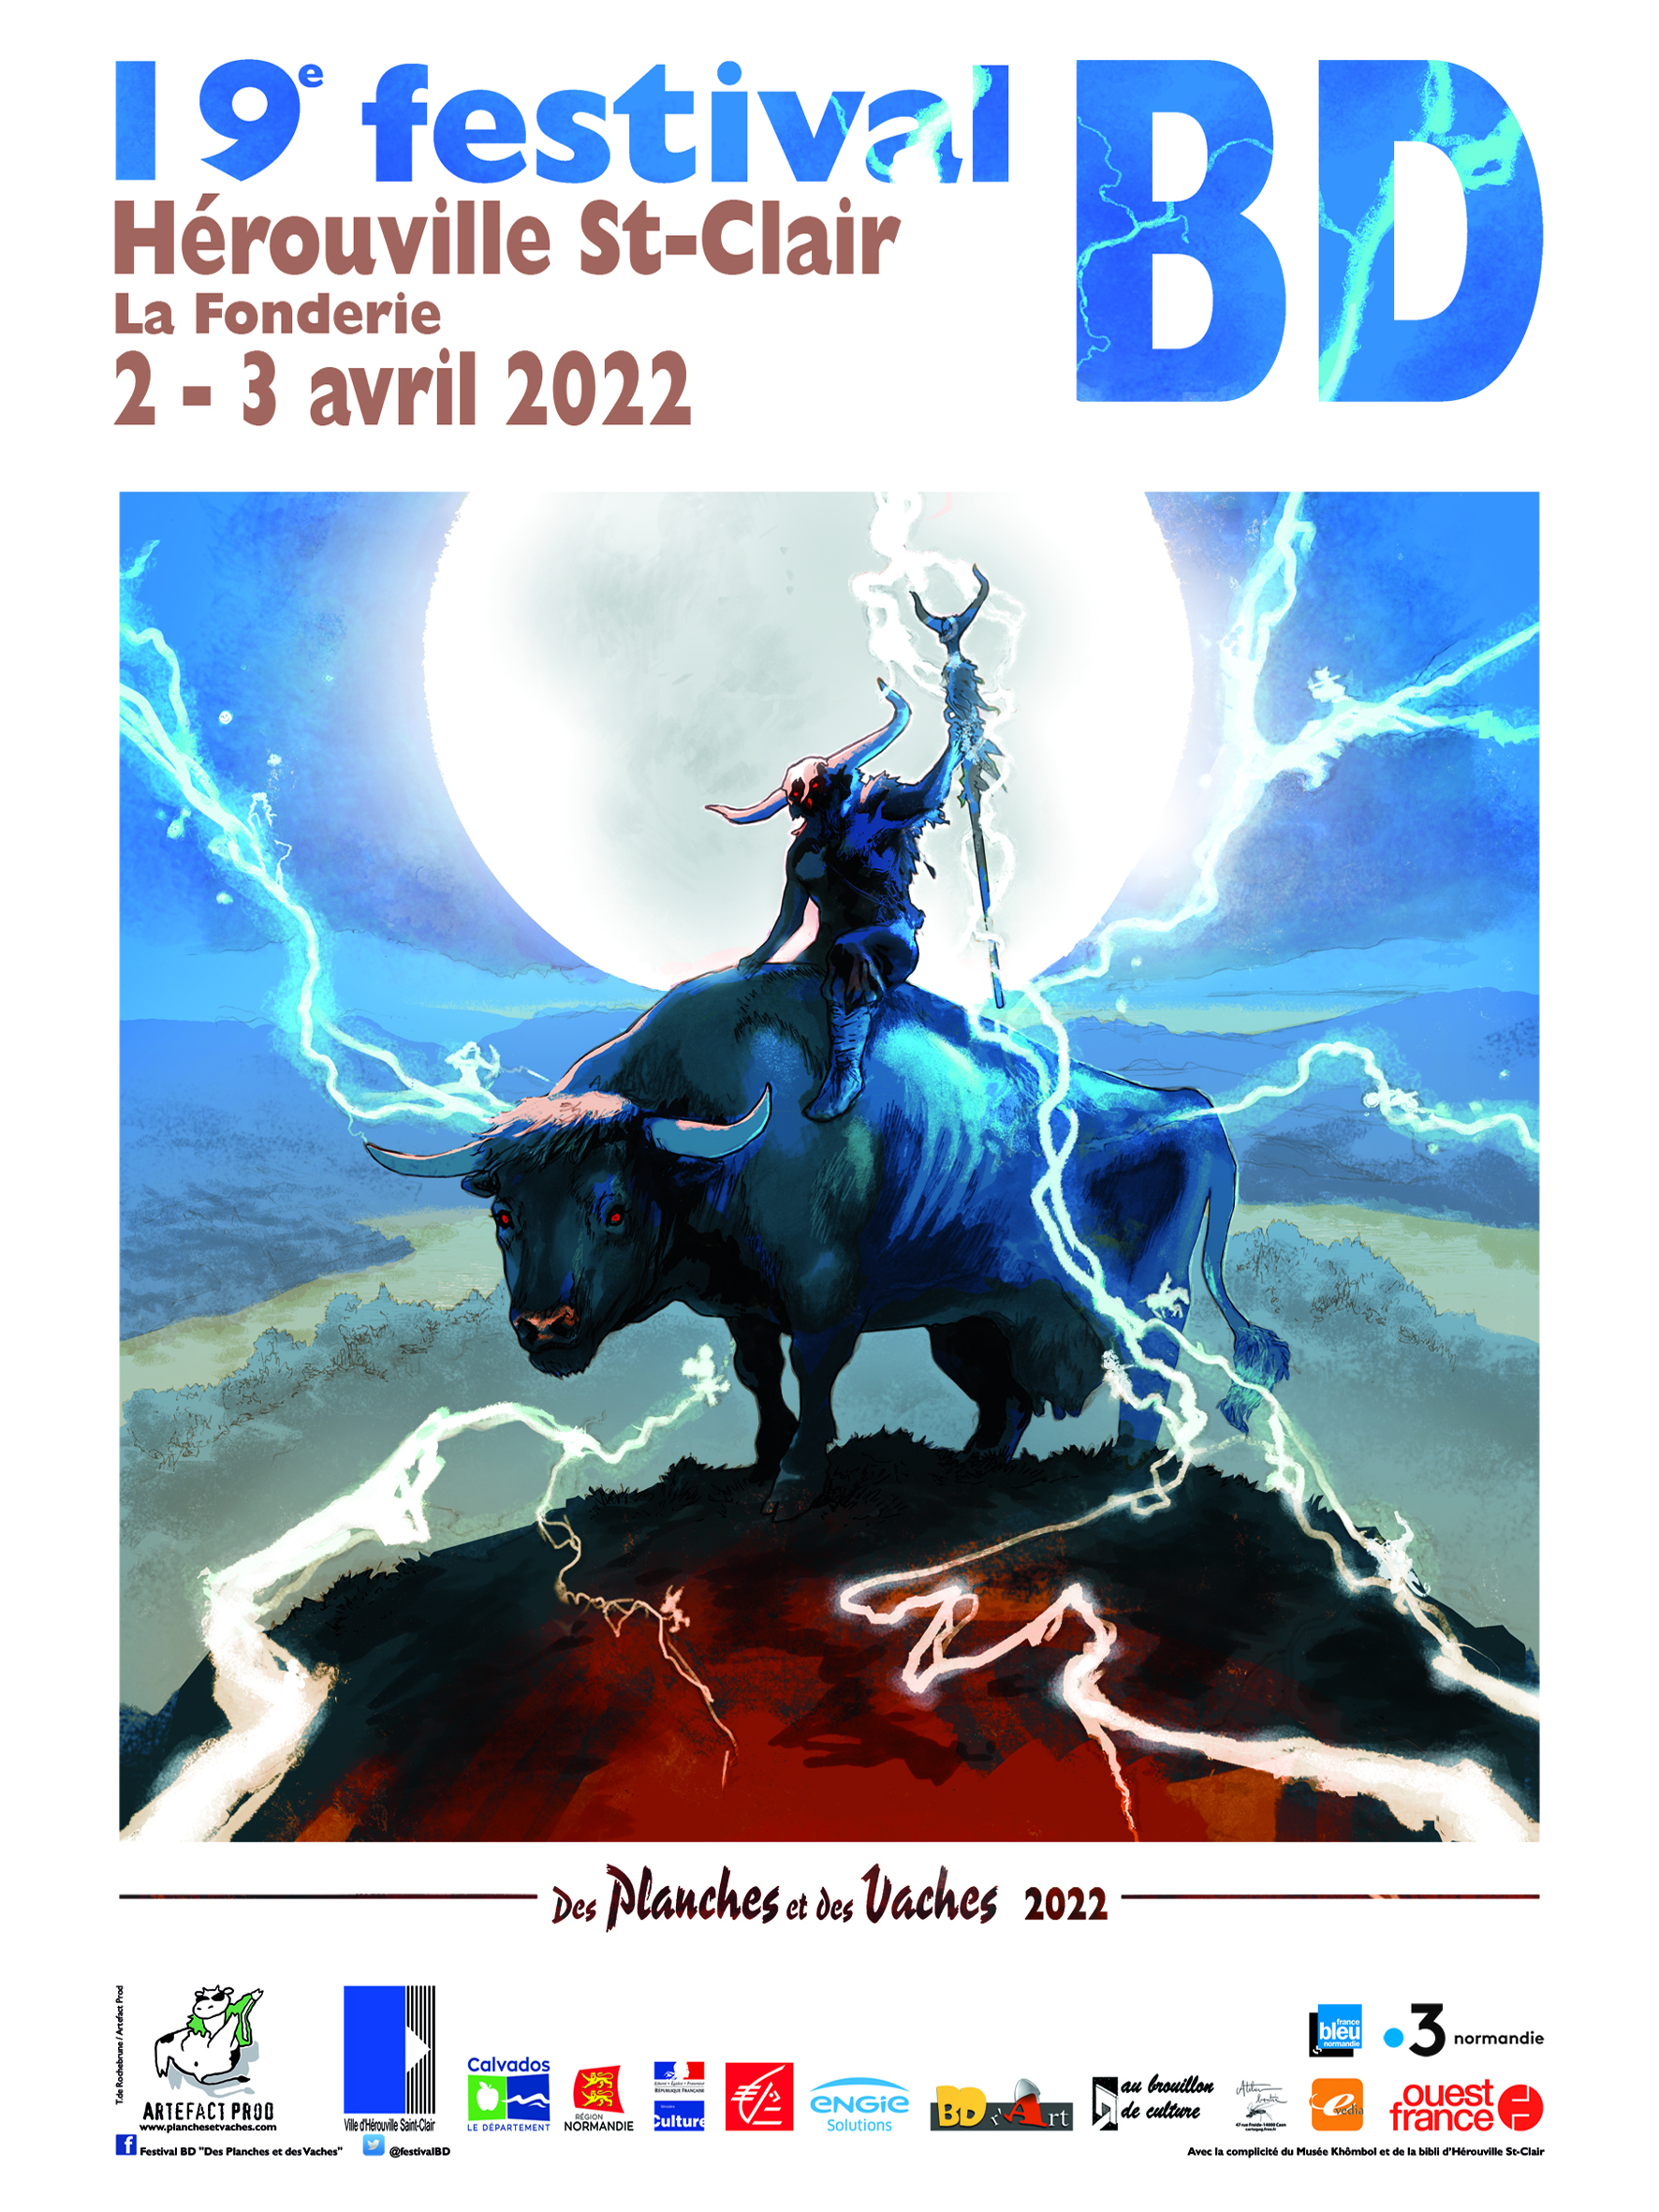 19e festival BD "Des Planches et des Vaches" - Normandie Livre & Lecture